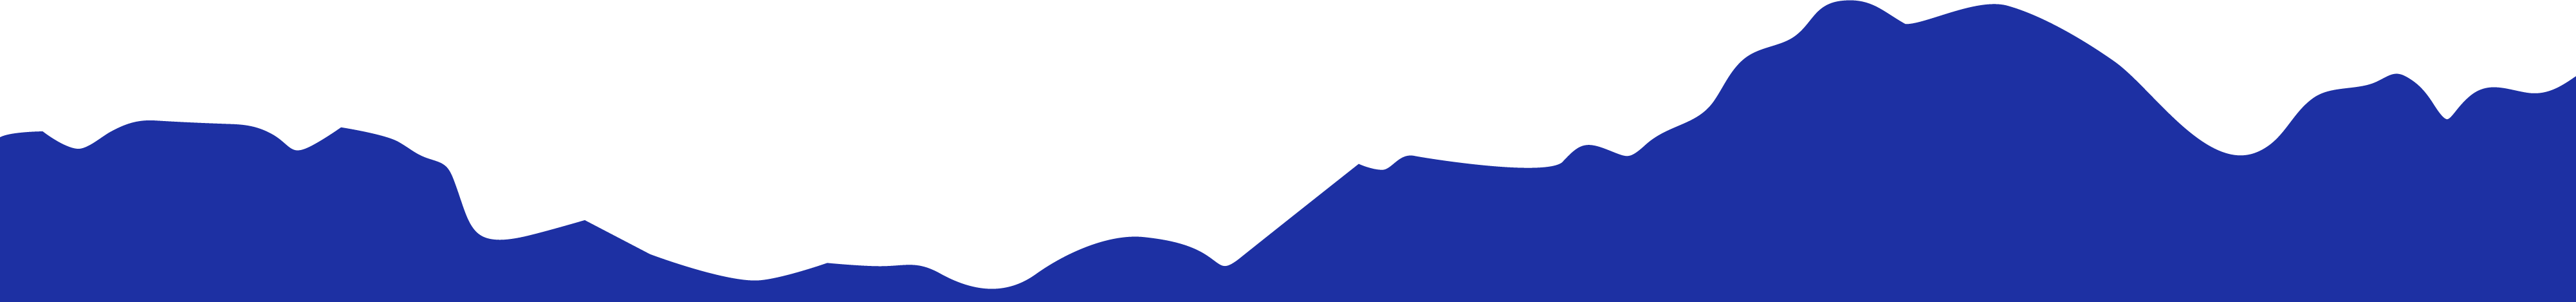 Illustration chaîne de montagne des Pyrénées